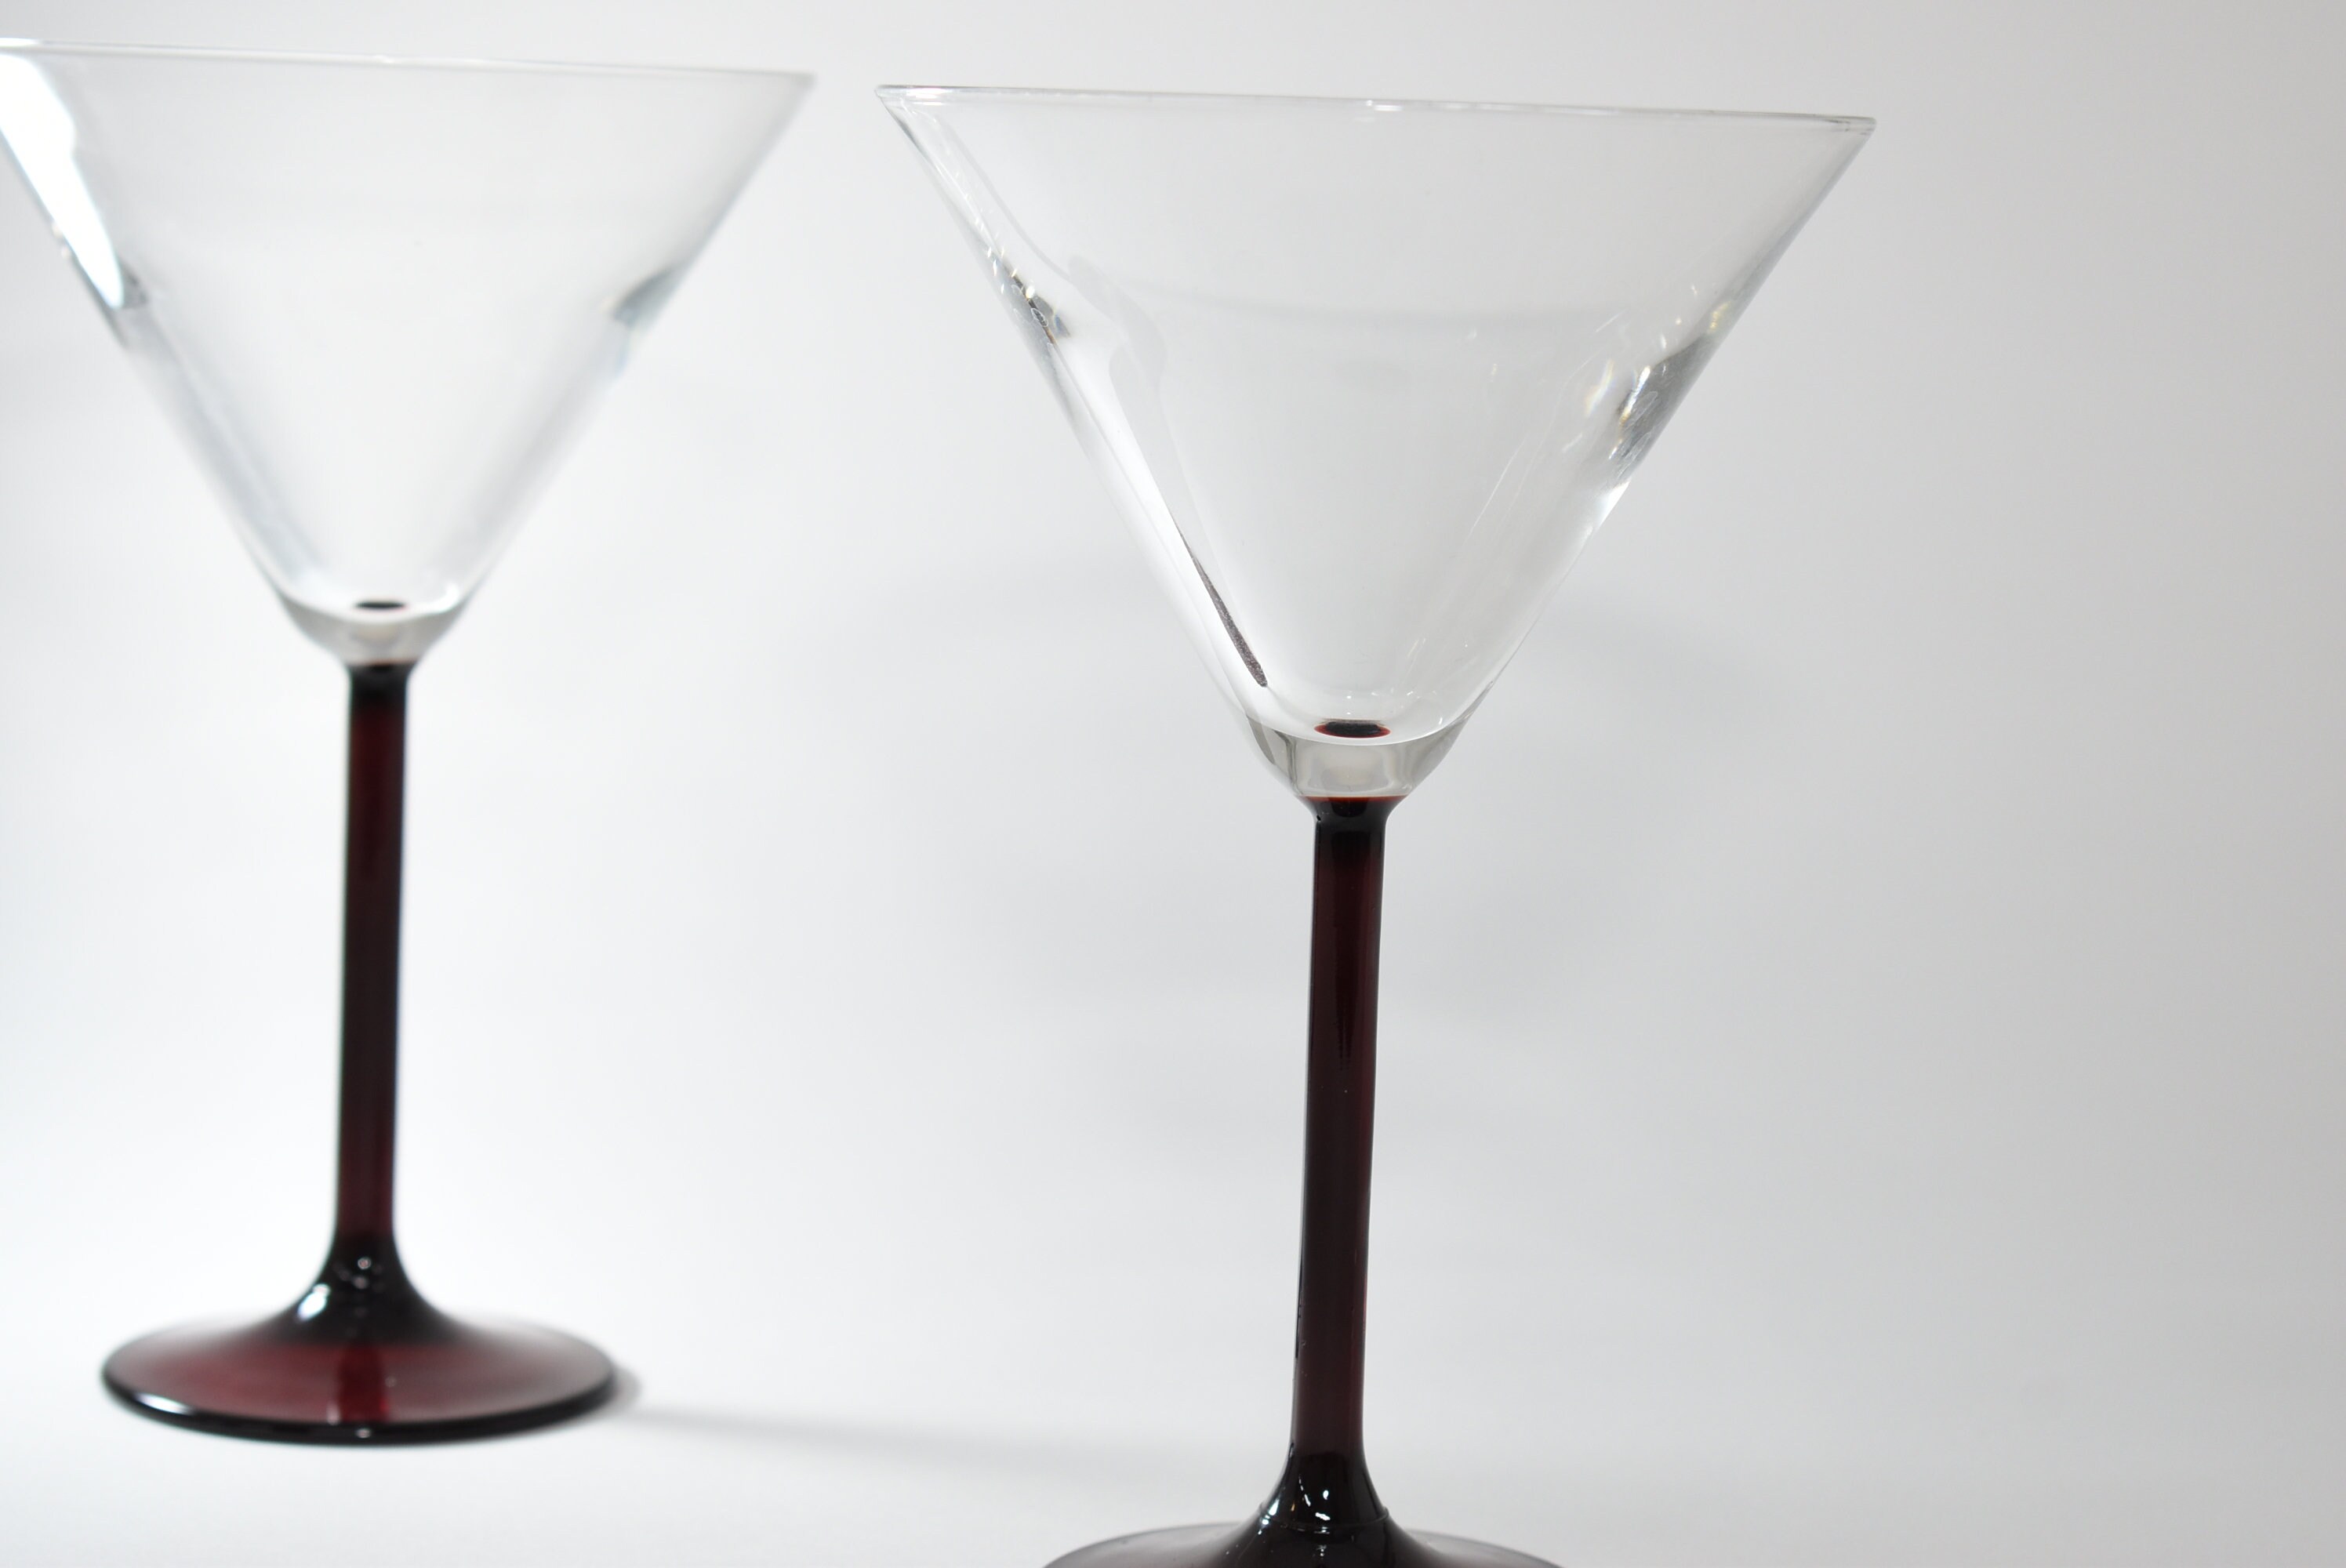 Suburb Red Stem Martini Glasses